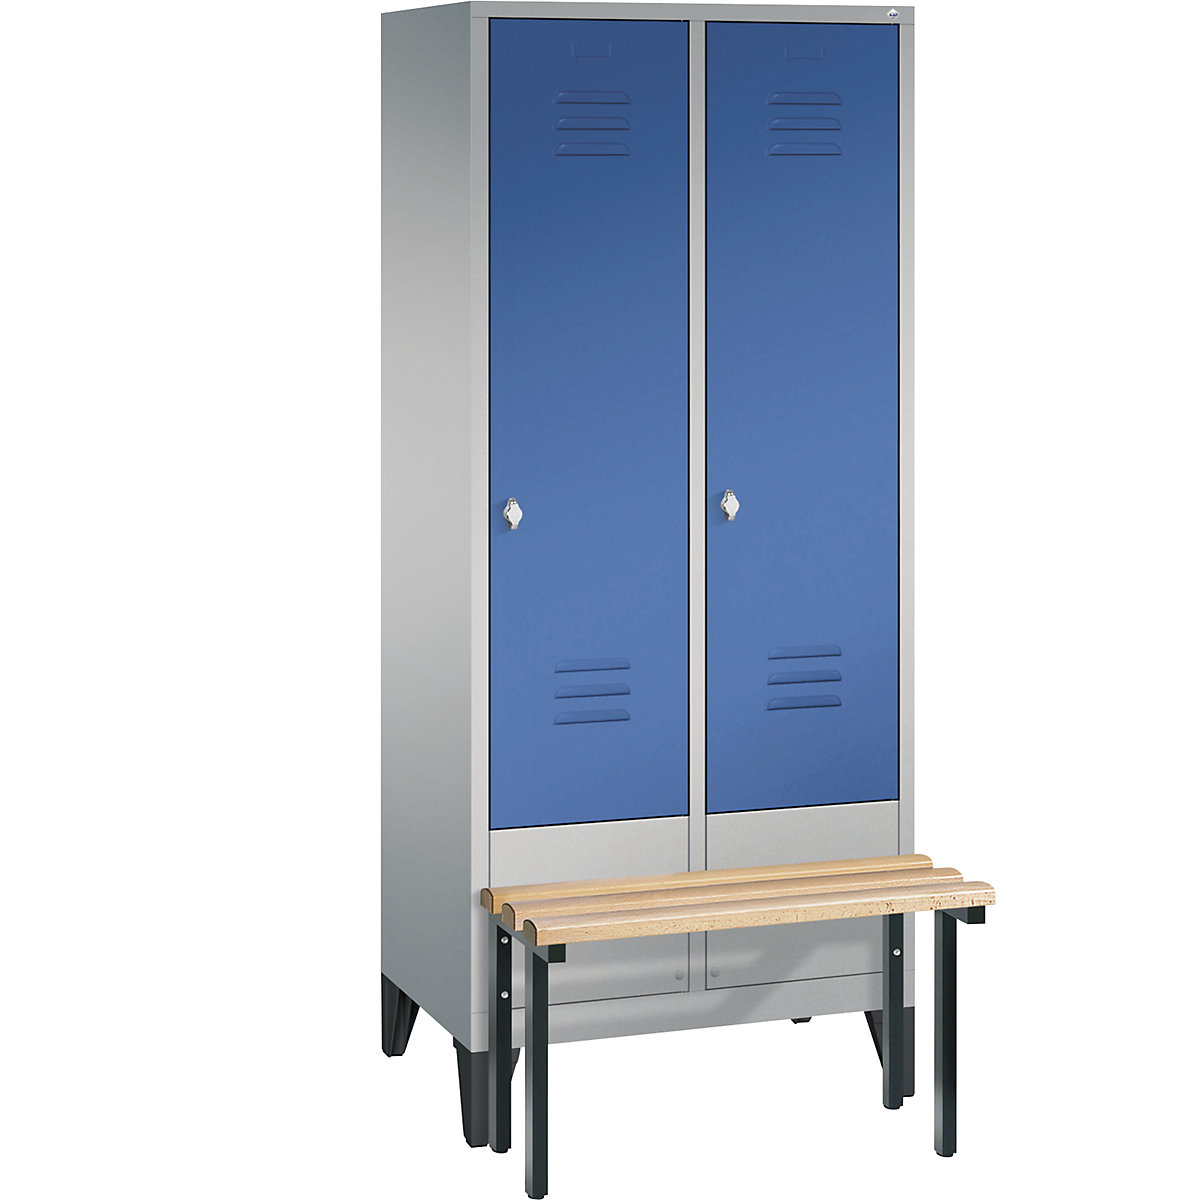 Garderobna omara CLASSIC s klopjo – C+P, 2 predelka, širina 400 mm/predelek, aluminijasto bele / encijan modre barve-9